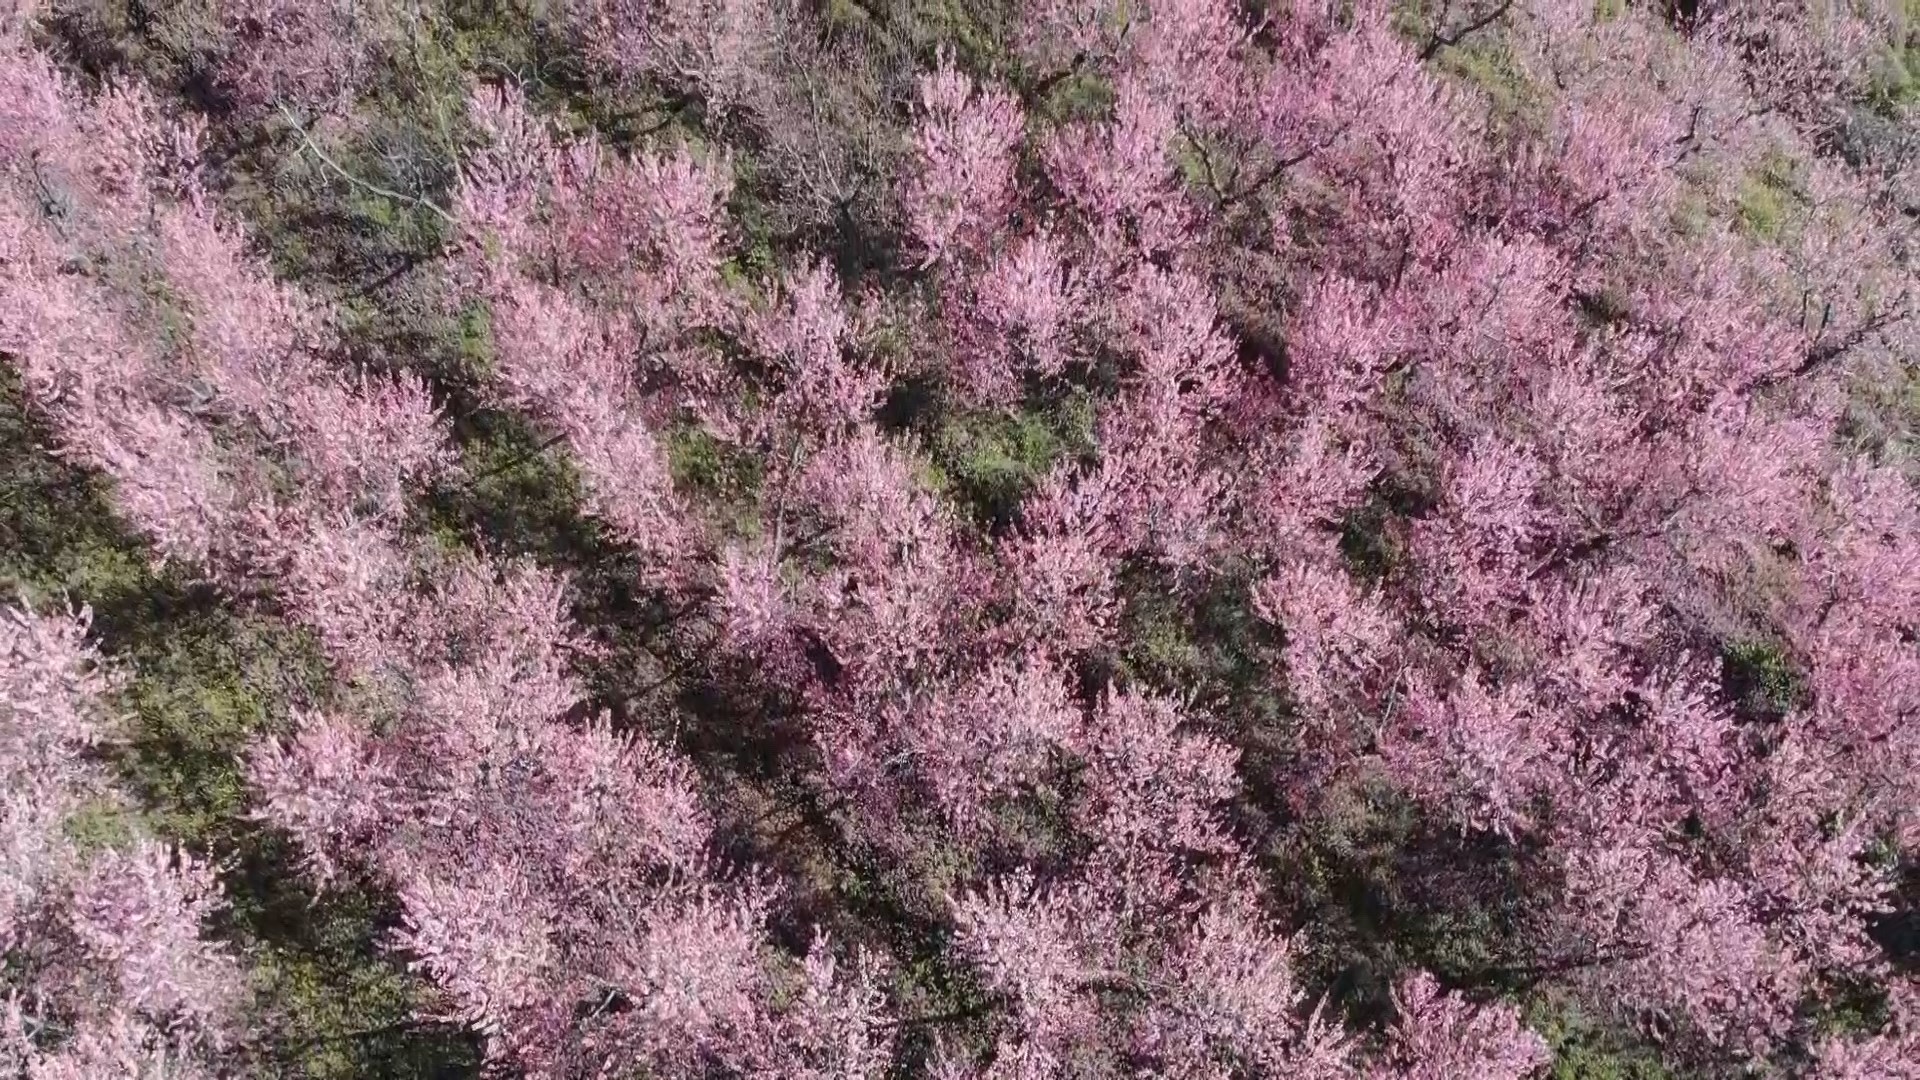 Çiçek açan meyve ağaçları kartpostallık görüntüler oluşturdu. Masalsı görüntüler dron ile görüntülendi